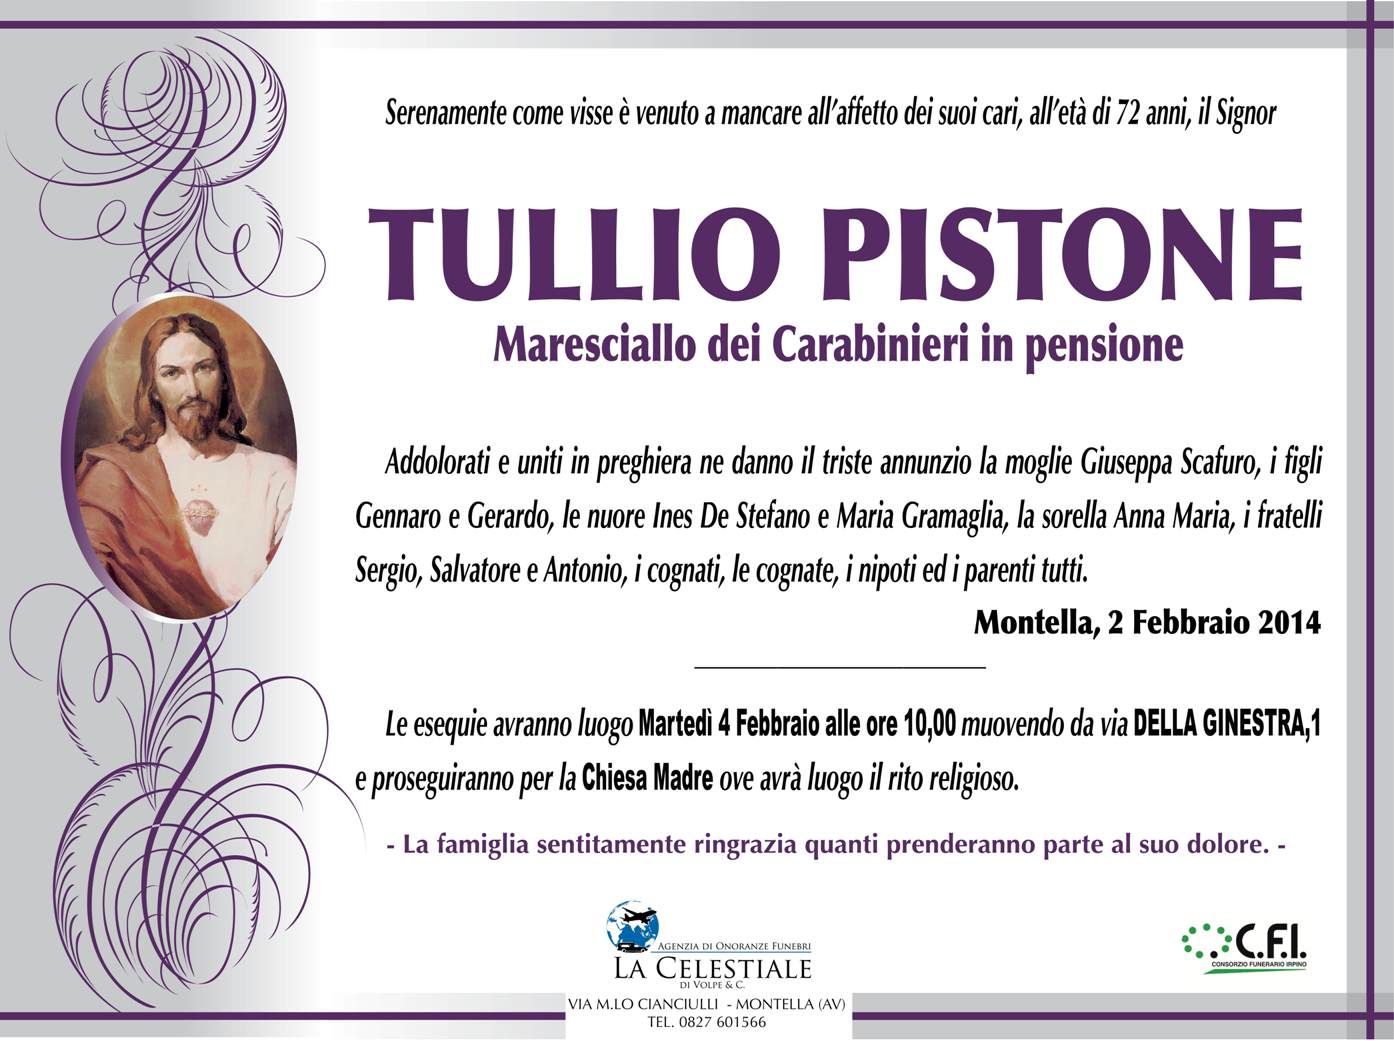 02-02-2014-Pistone-Tullio